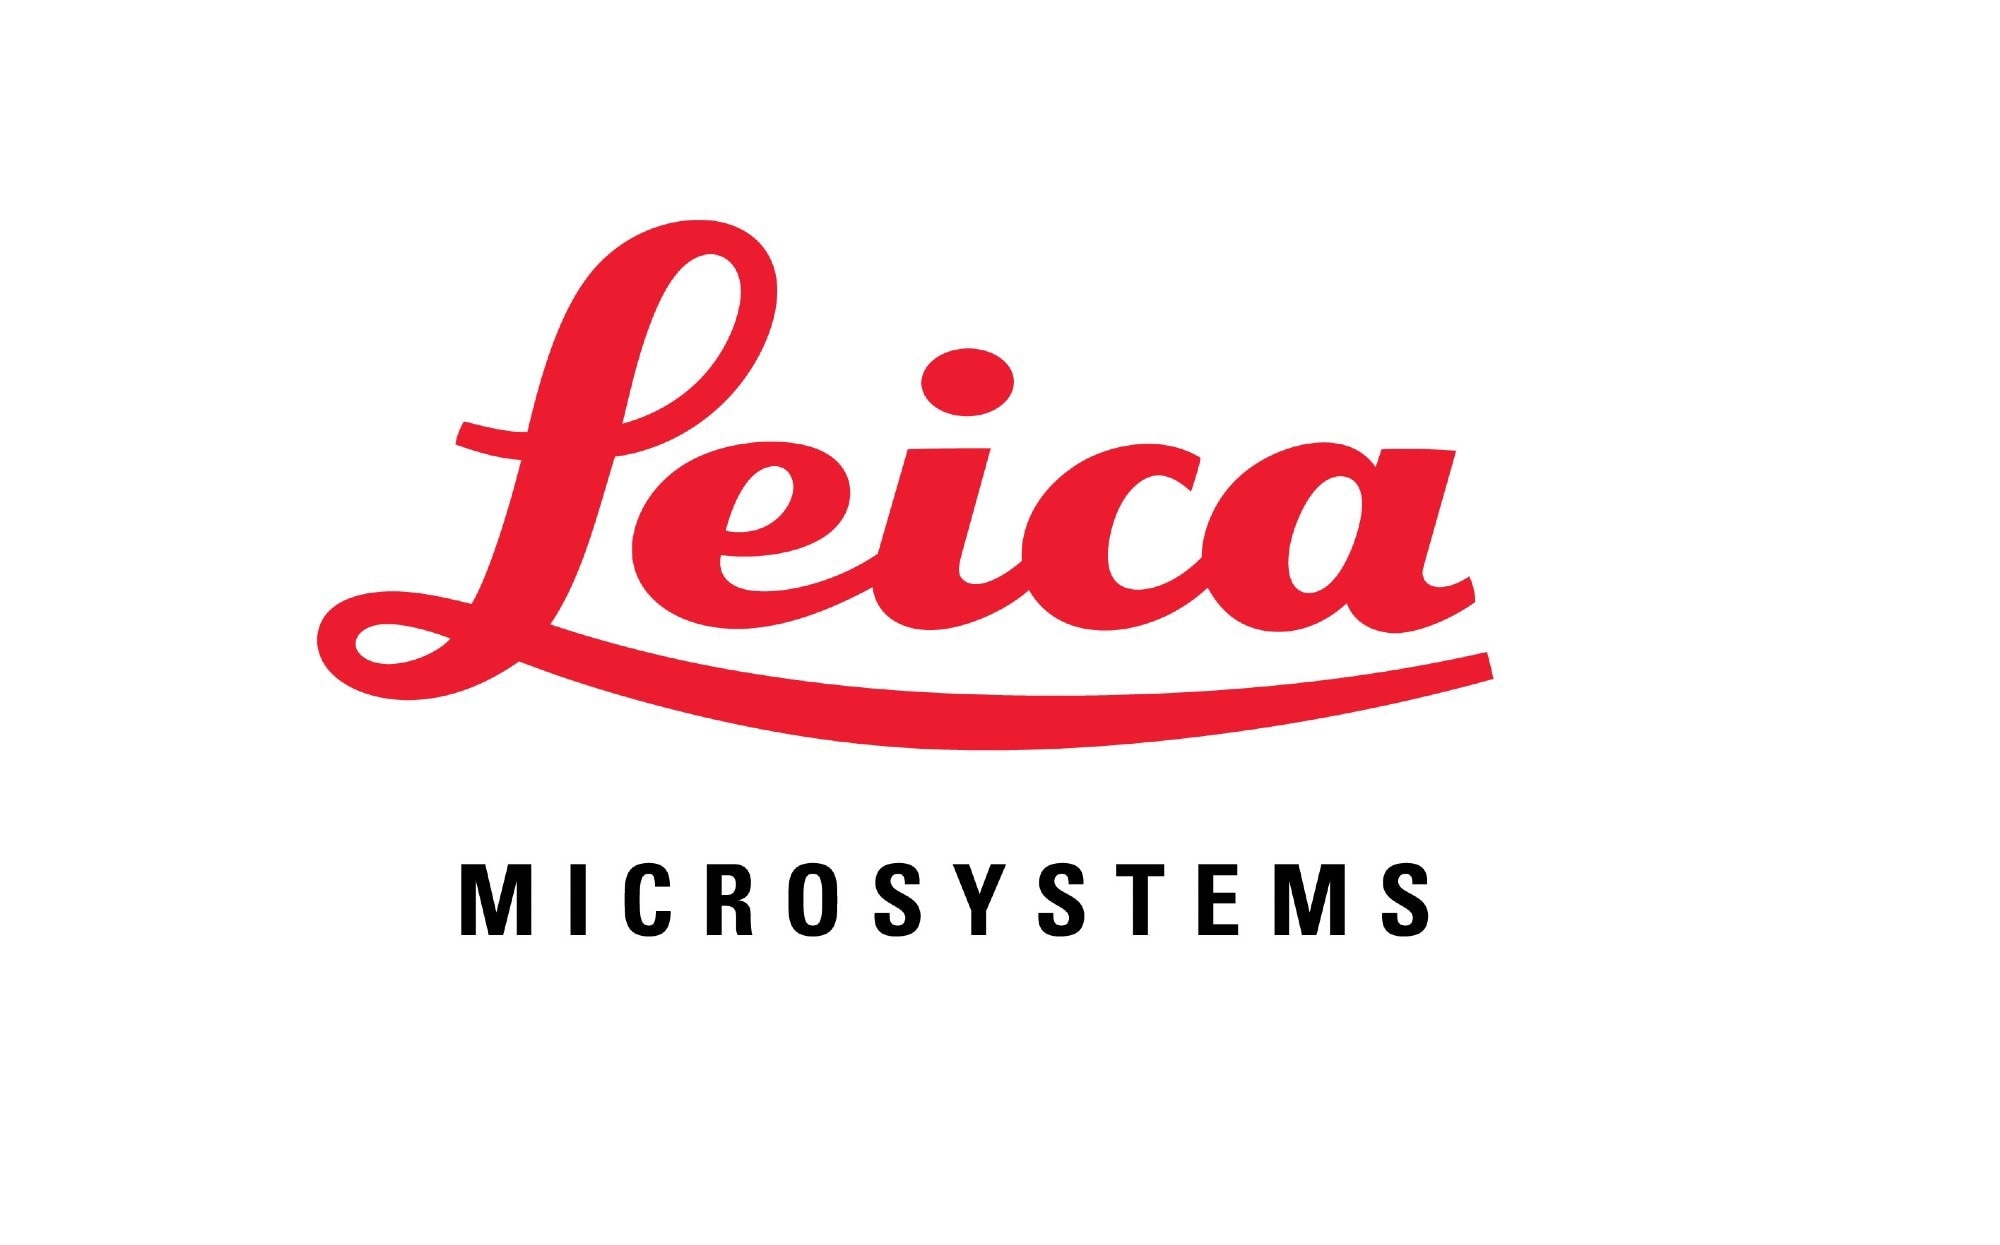 Leica Microsystems - Surgical Microscopes - EMEA